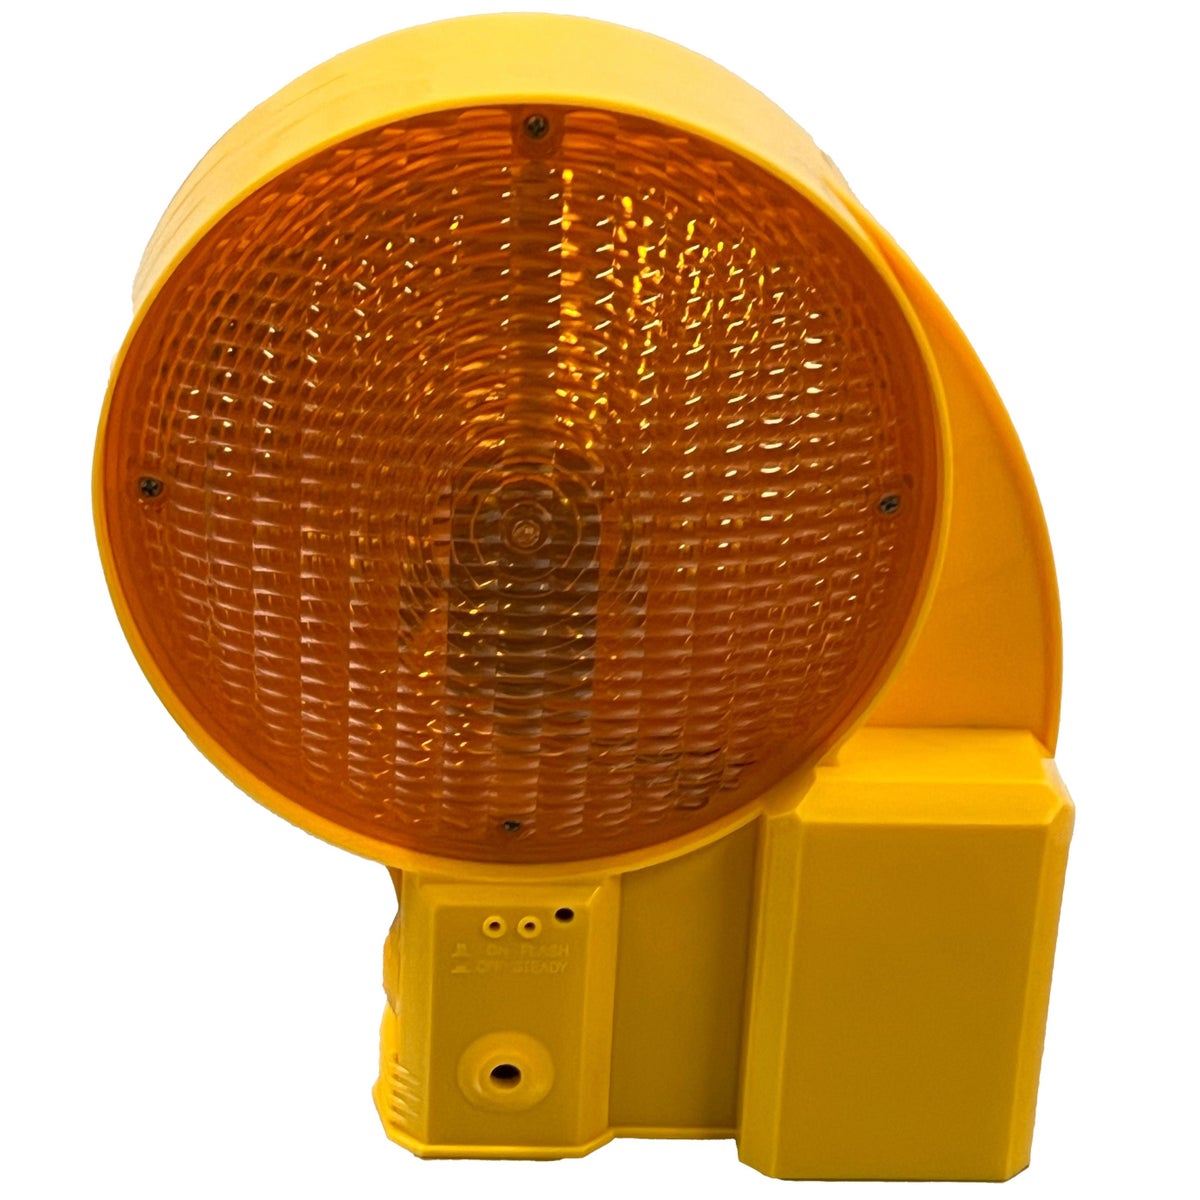 UVWARN Bakenleuchte gelbe LED + 1 Batterie 6 Volt 200mm Linse L6 DIN EN12352 einseitig / gelbes Gehäuse